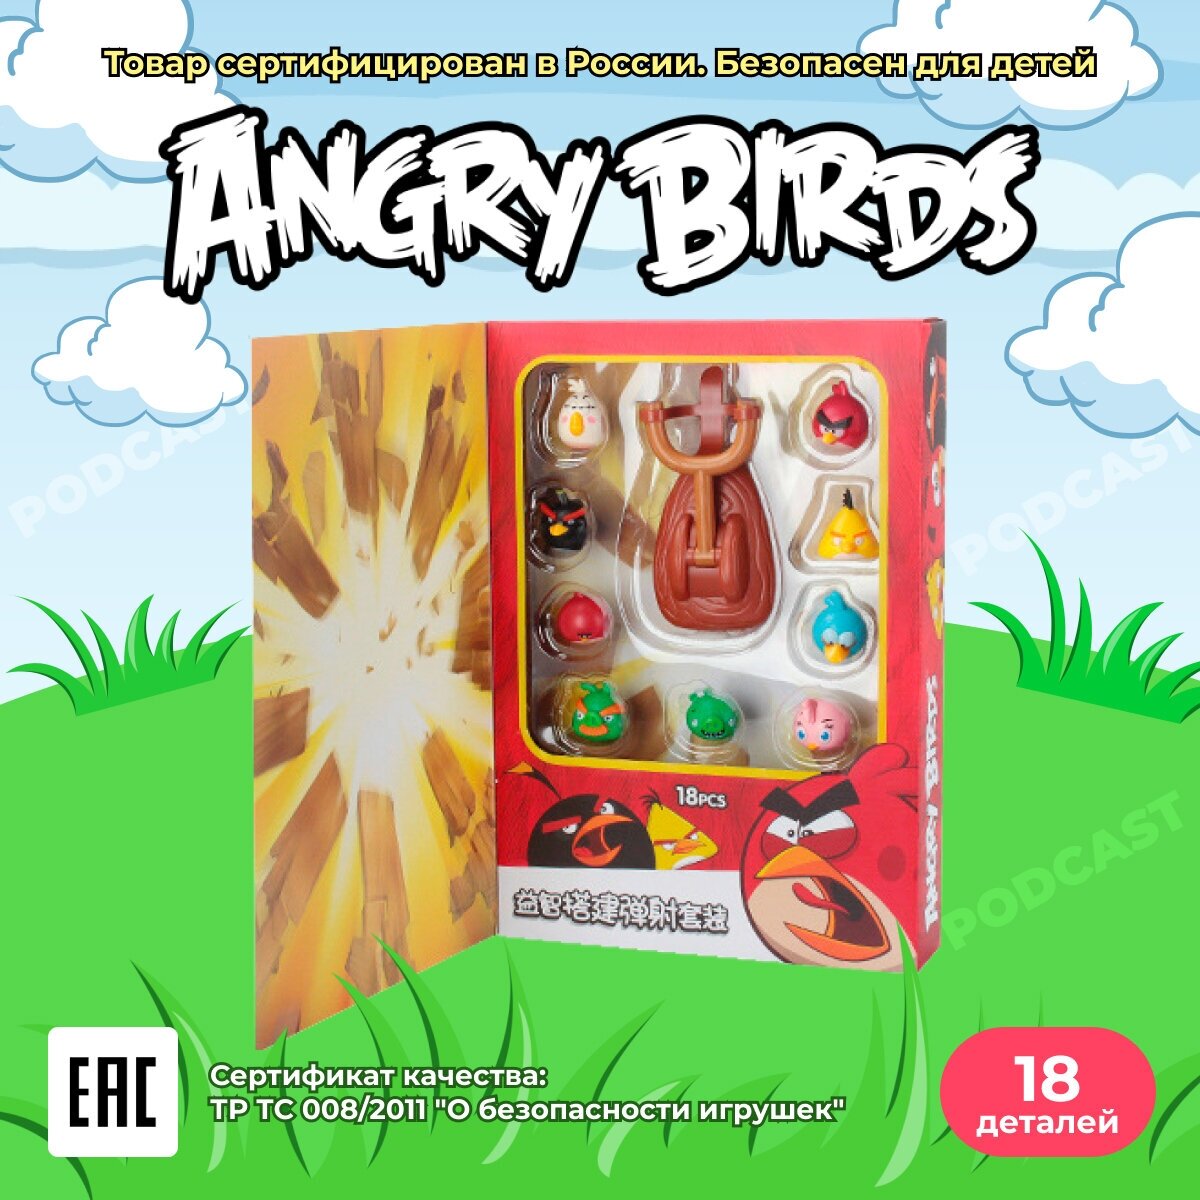 Детский игровой набор Злые Птички для девочек и мальчиков / игрушка Angry Birds развивающая с рогаткой, 18 шт.